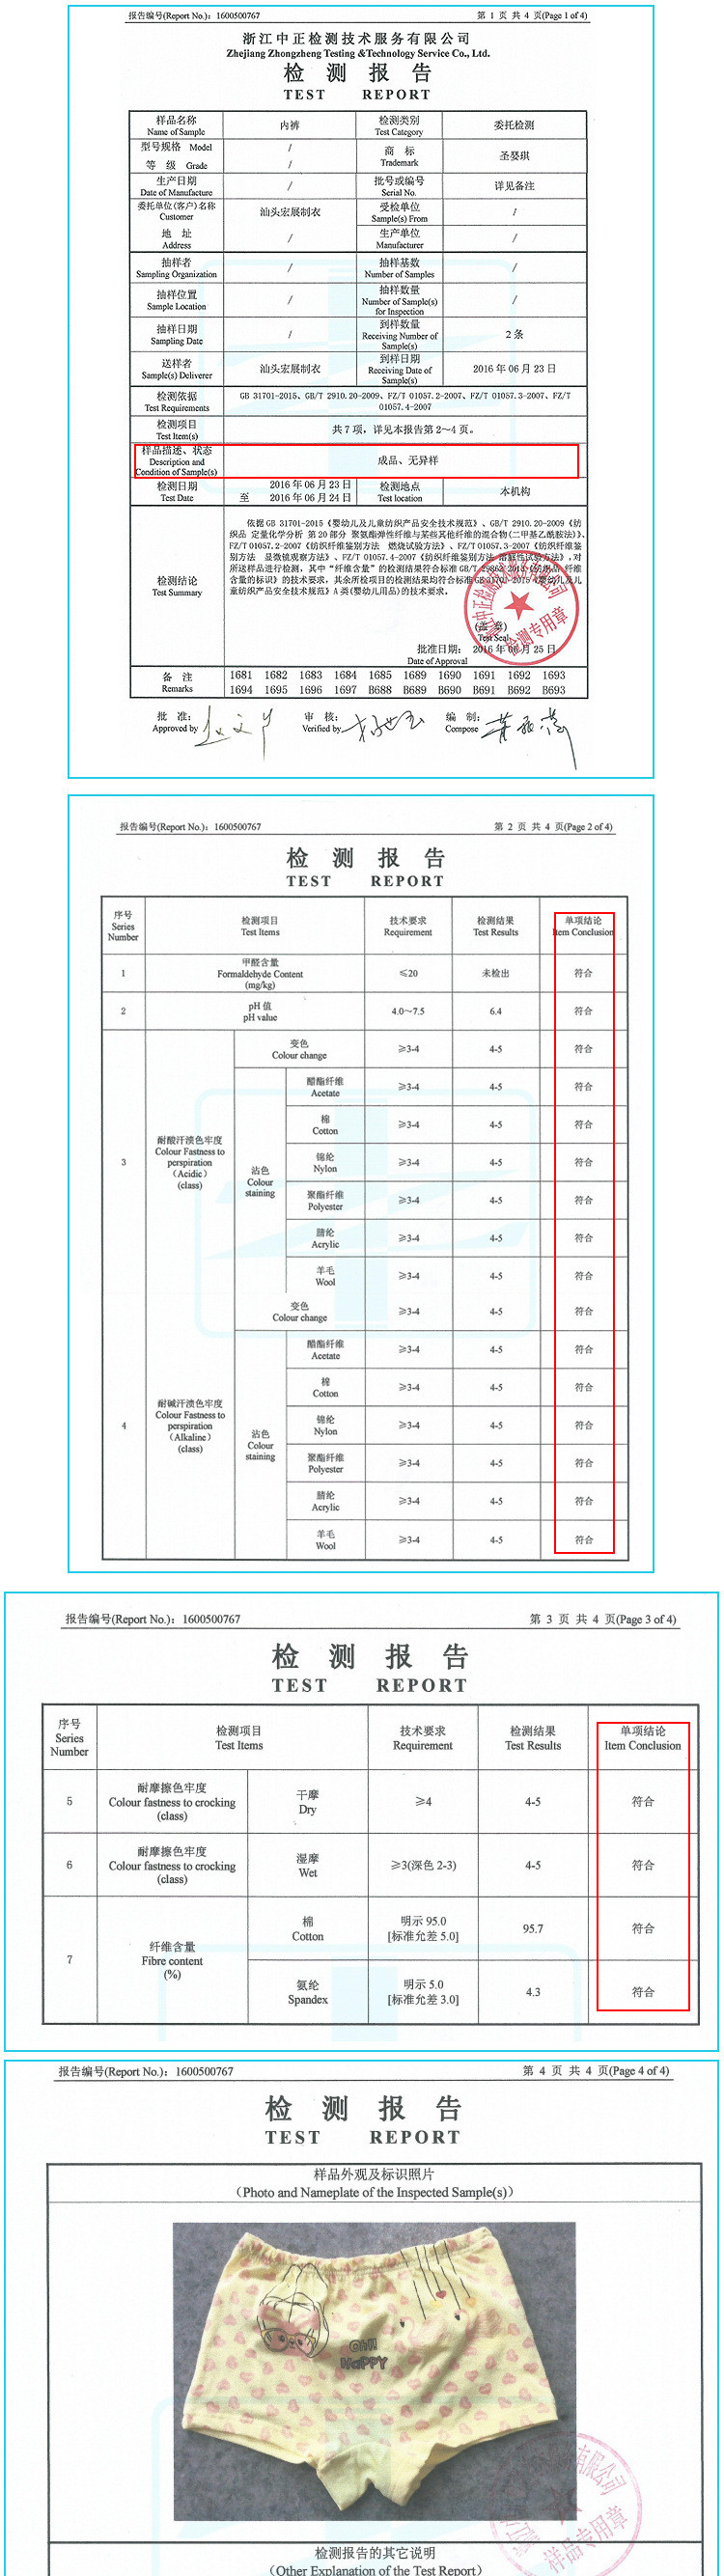 2018韩国风格 童内衣儿童内裤 卡通婴儿童装 棉质内裤 童装批发示例图30